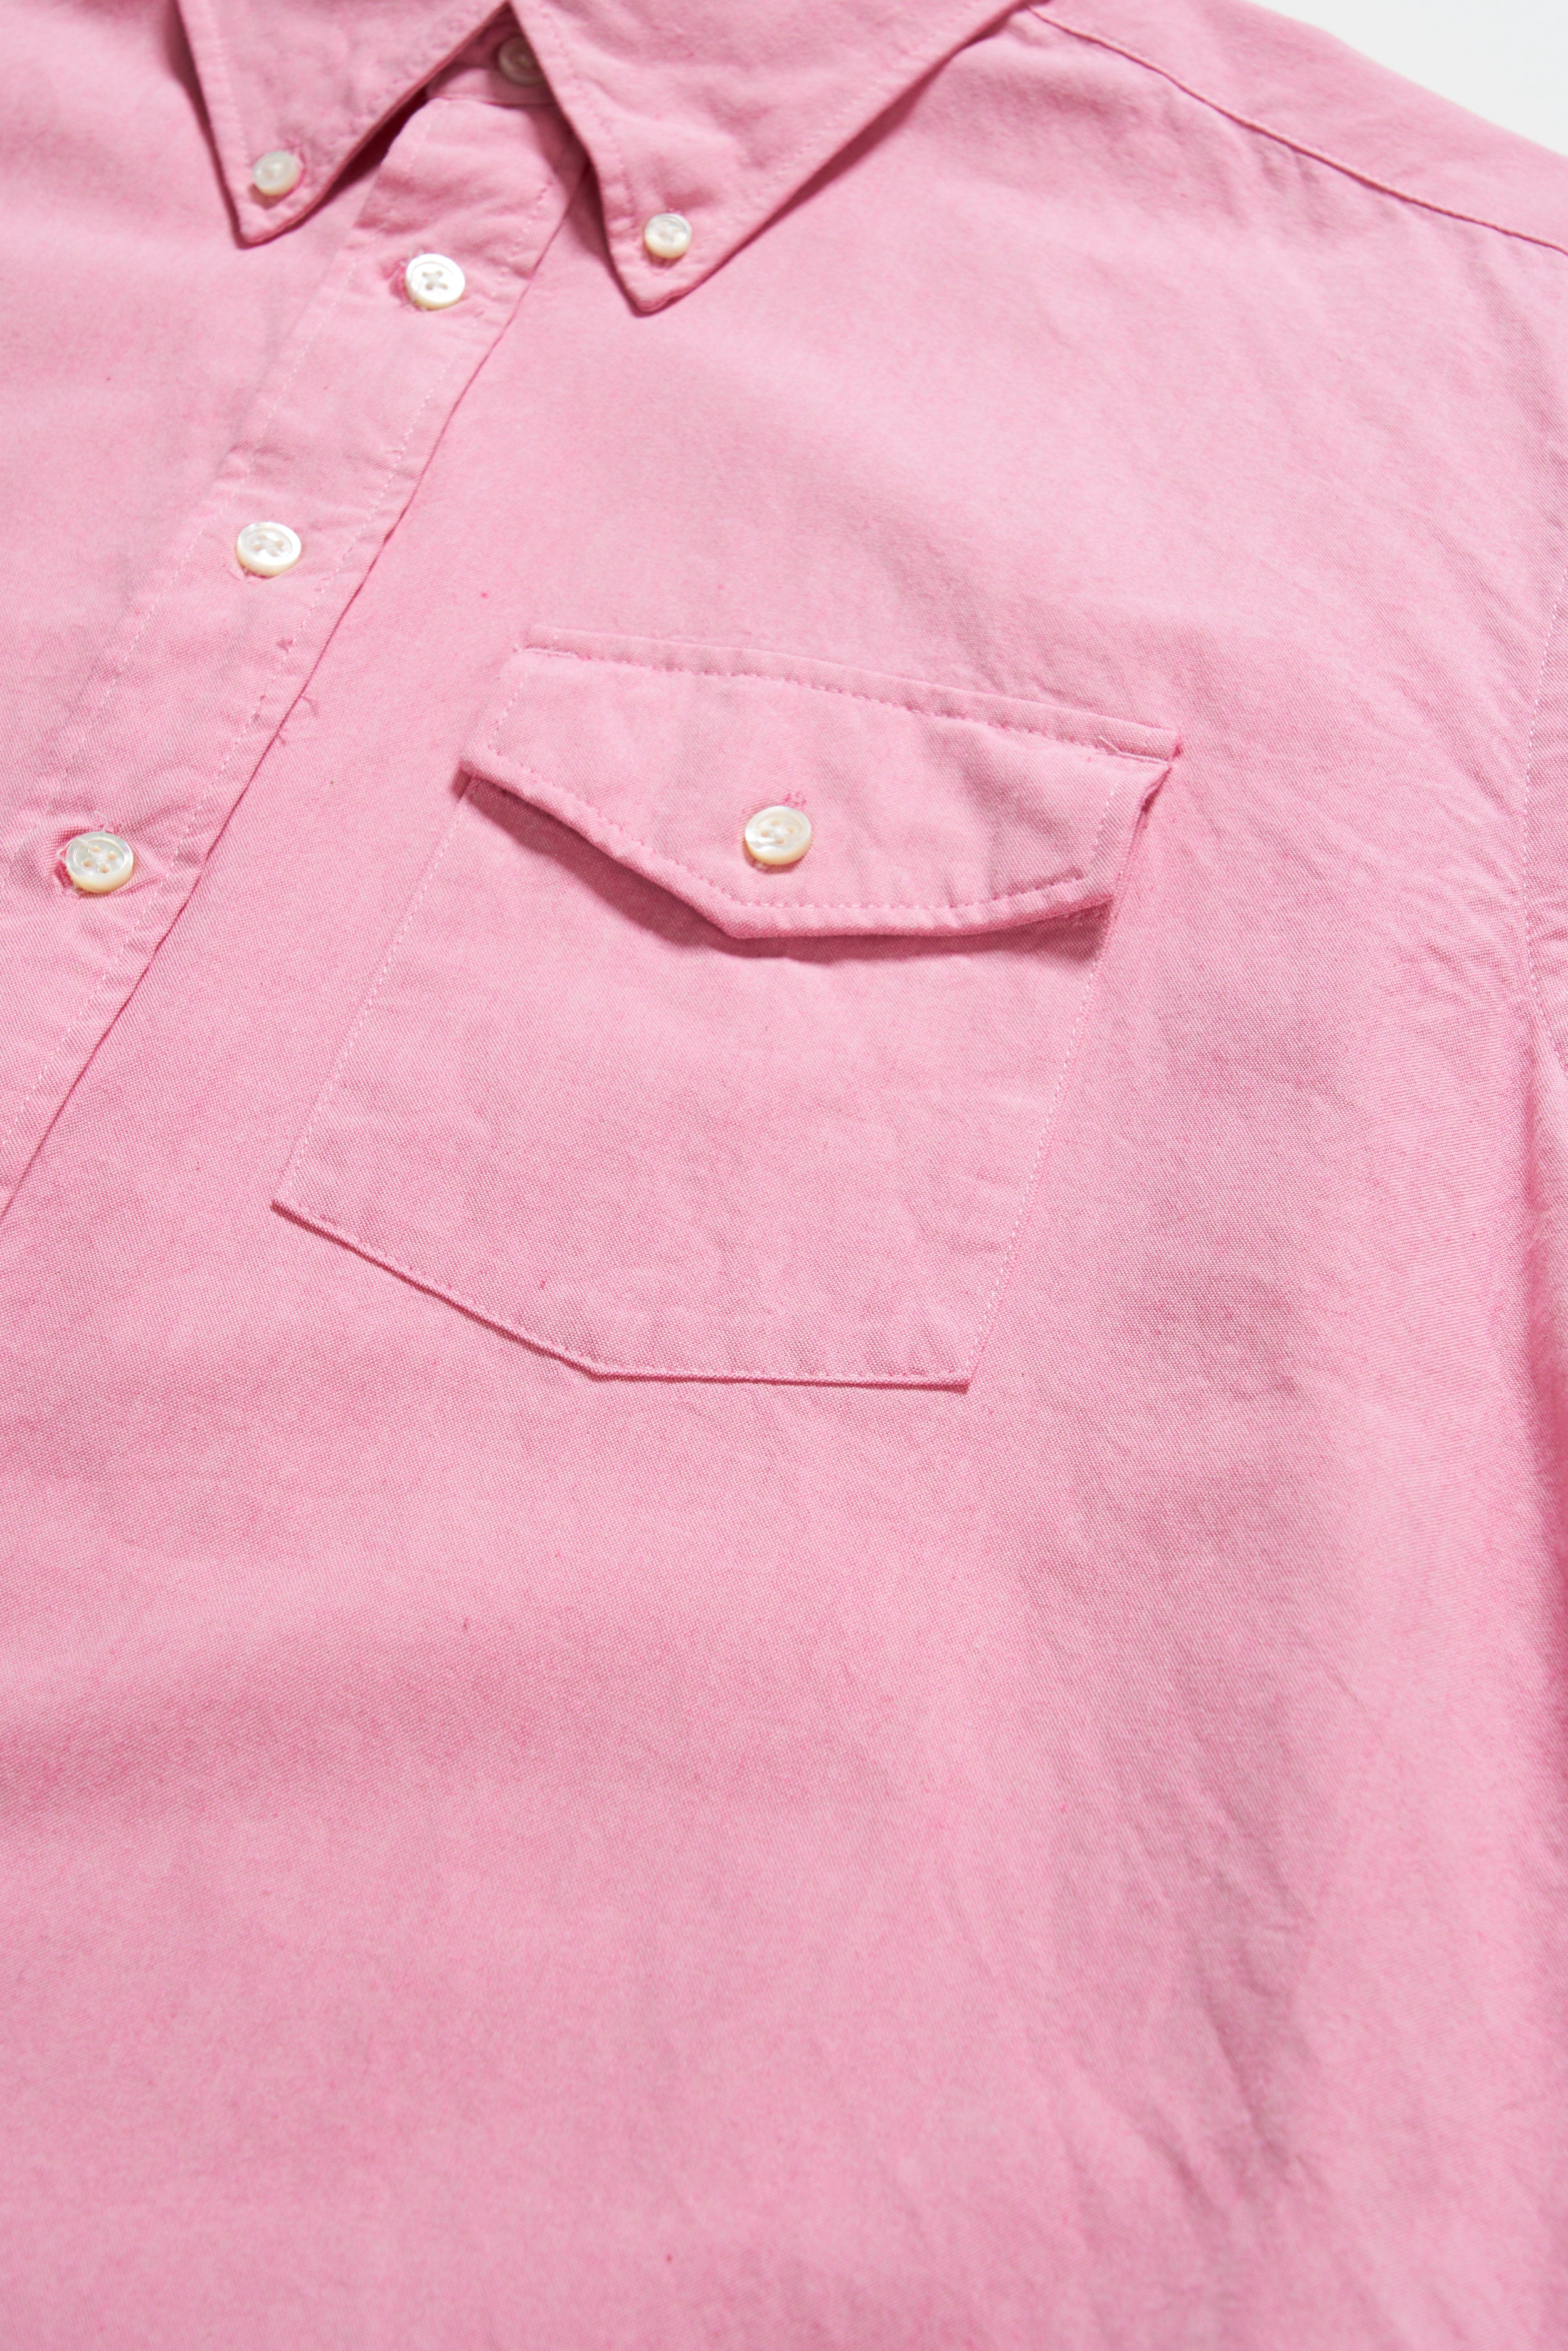 Ivy BD Shirt - Pink Cotton Iridescent